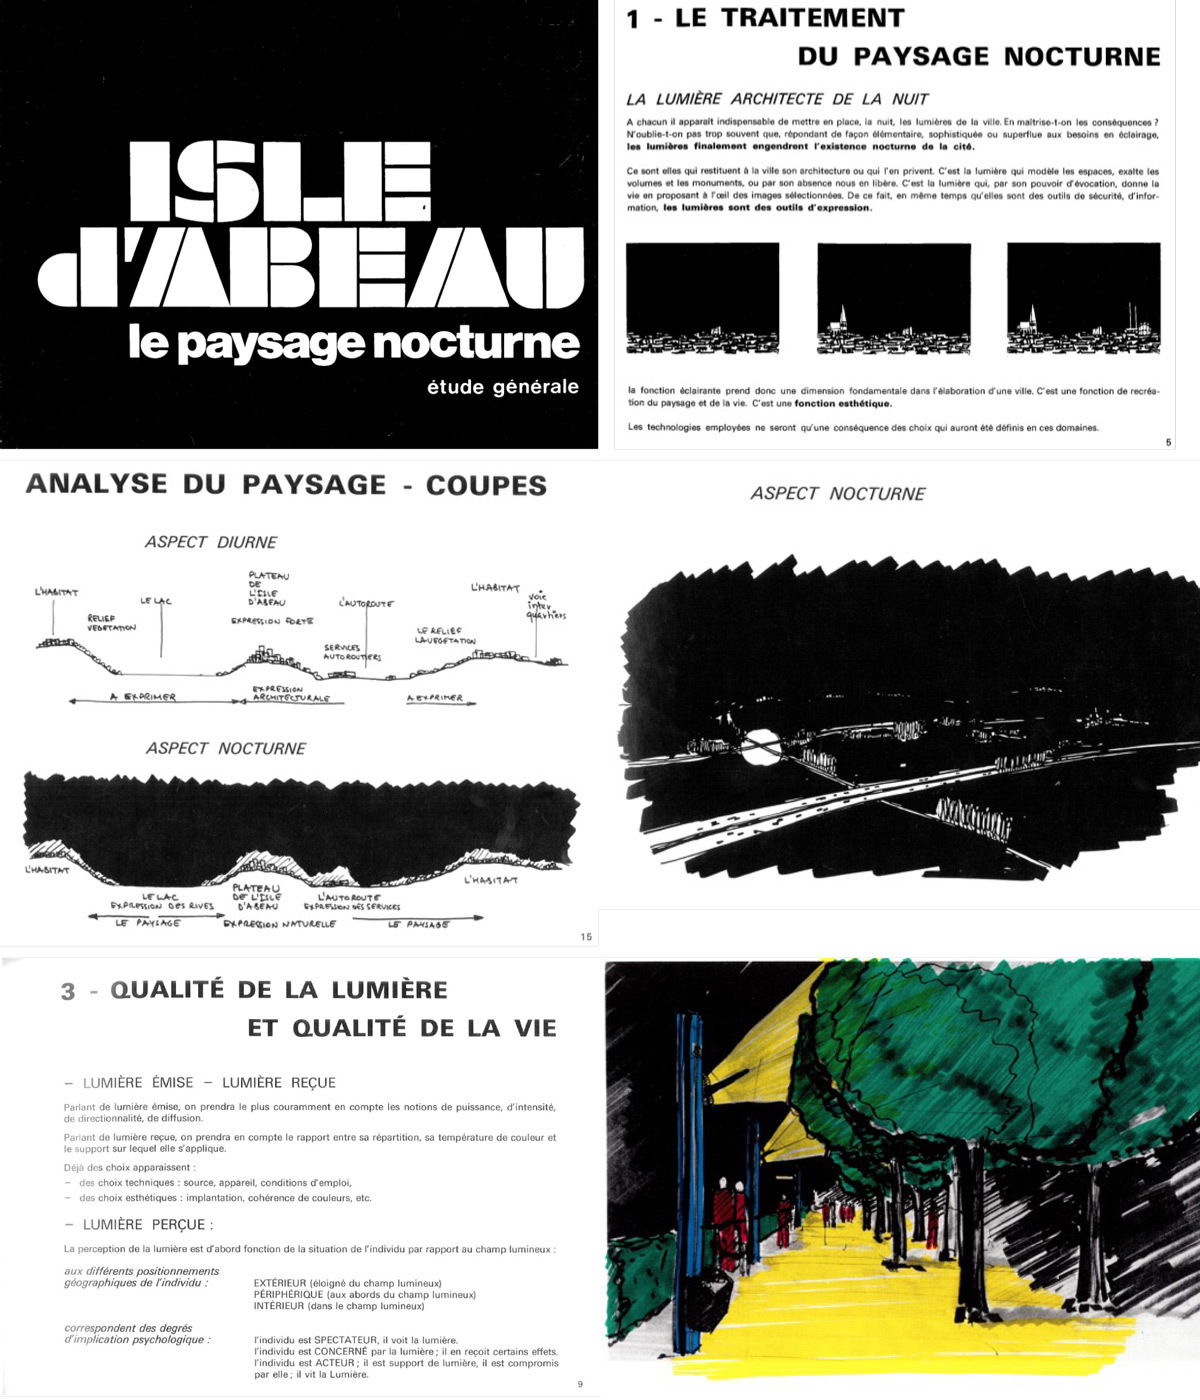 Paysage nocturne de la ville Nouvelle de l'Isle d'Abeau, 1973 - extrait des 45 pages - schémas de principe © ECA - Etudes et Création d'Ambiance - P. Arnaud et A. Weil